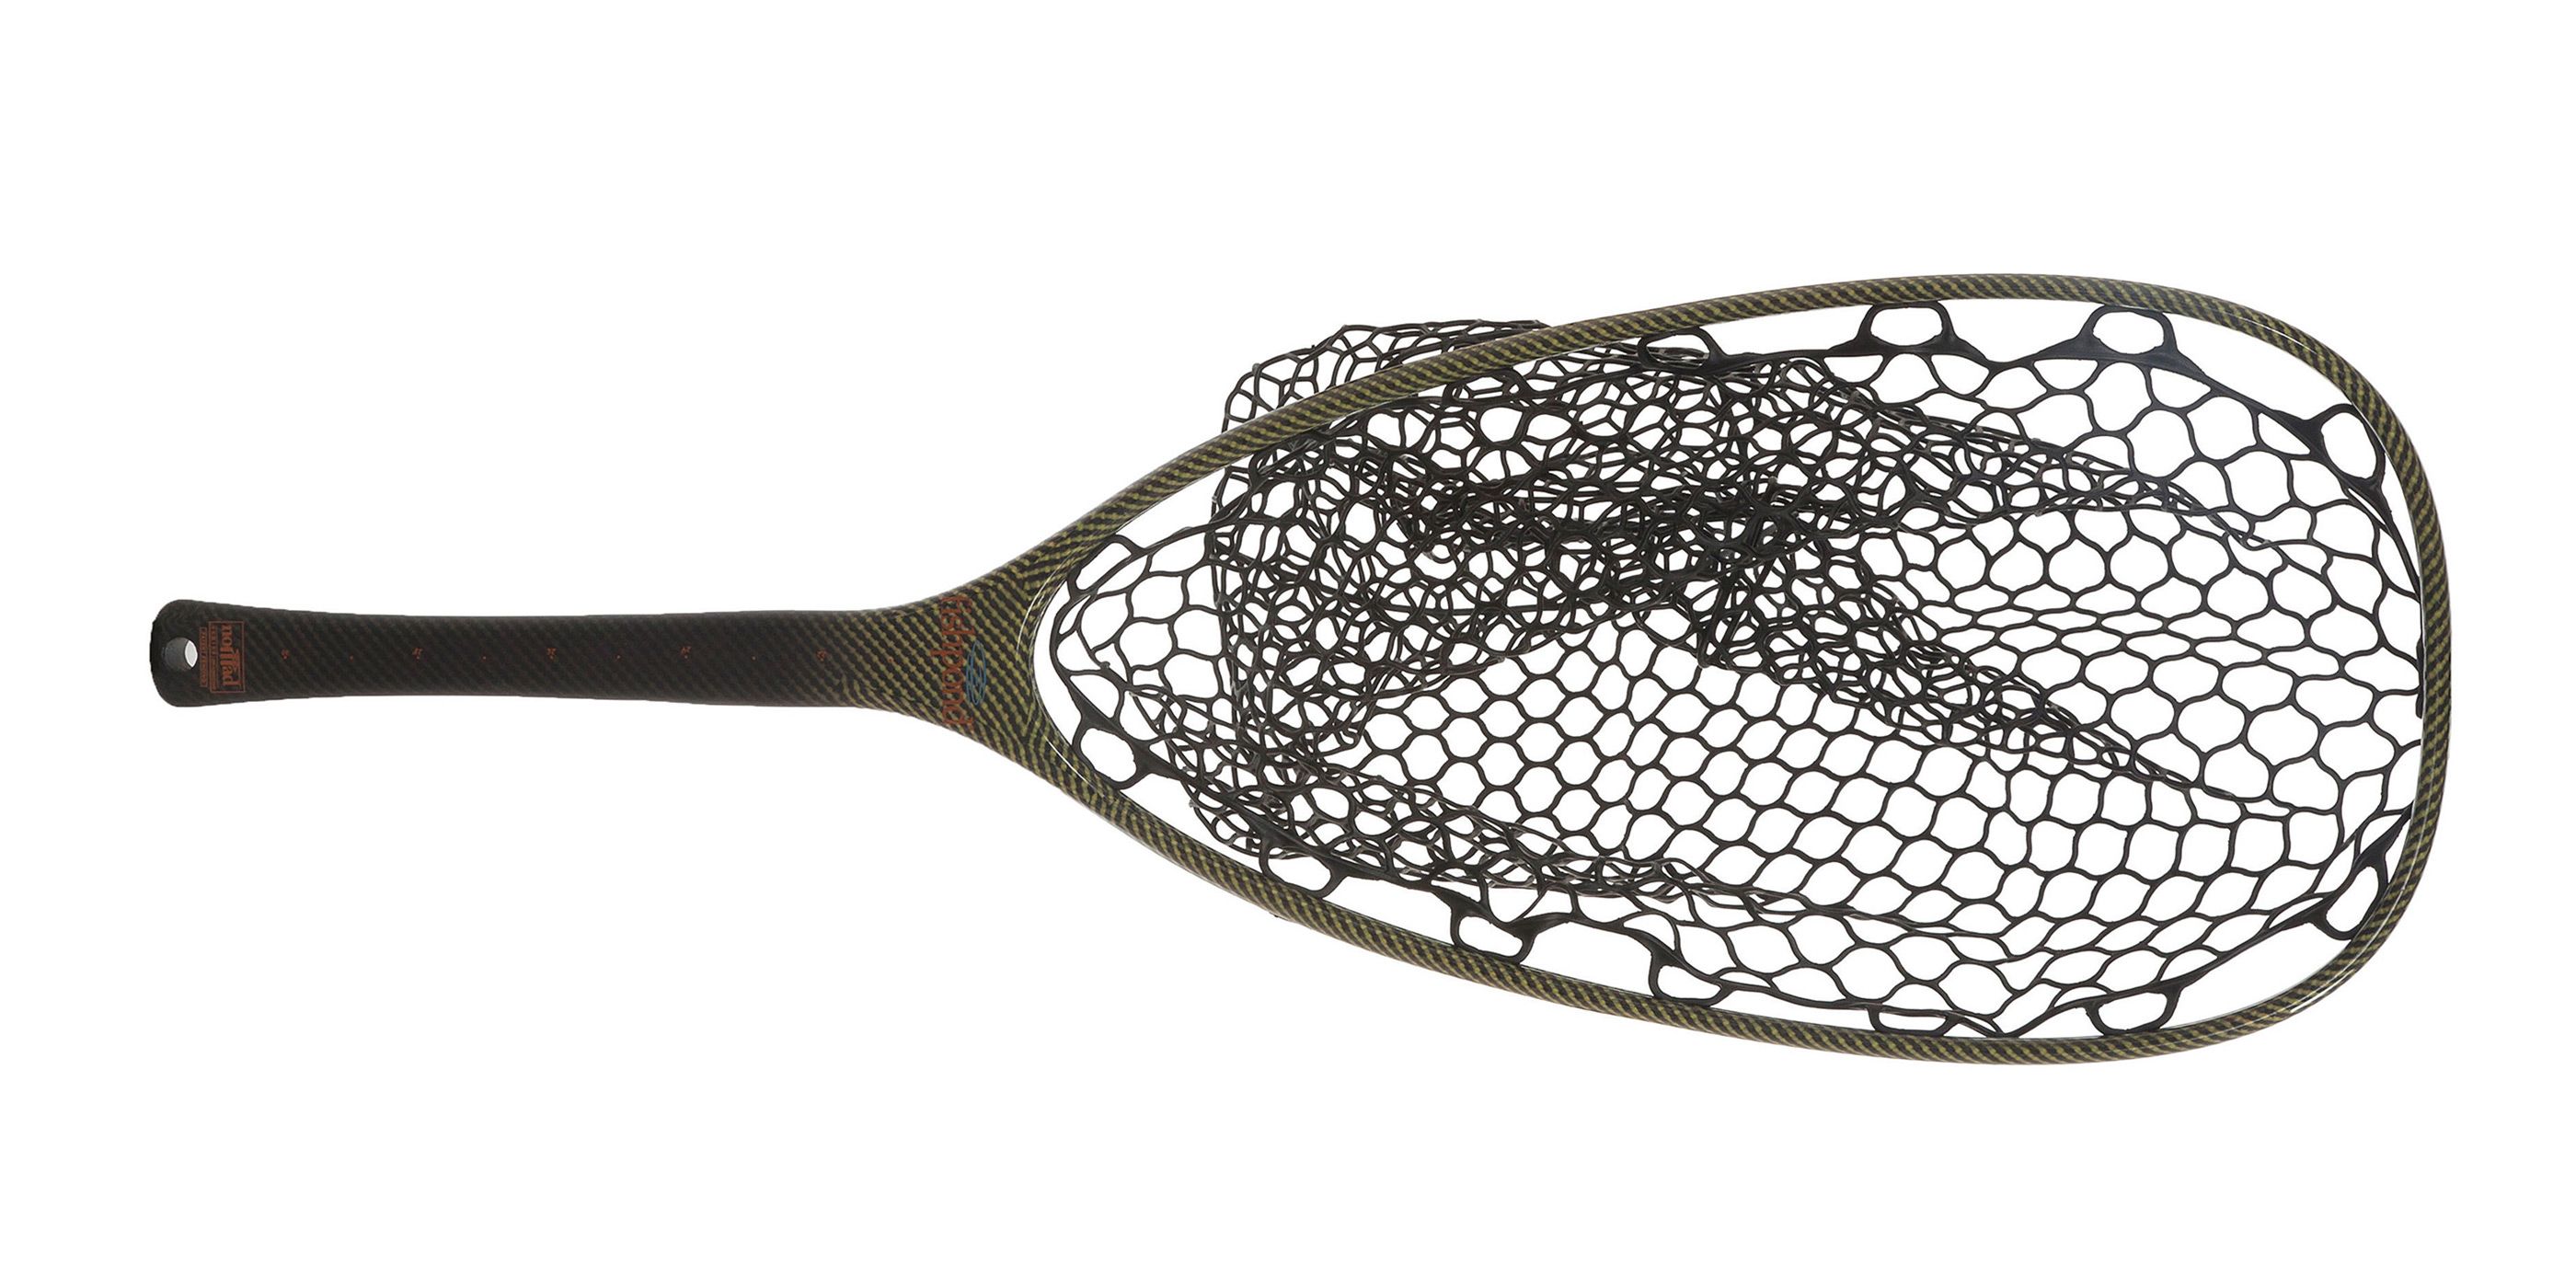 Fishpond Nomad Emerger Net (River Armor)